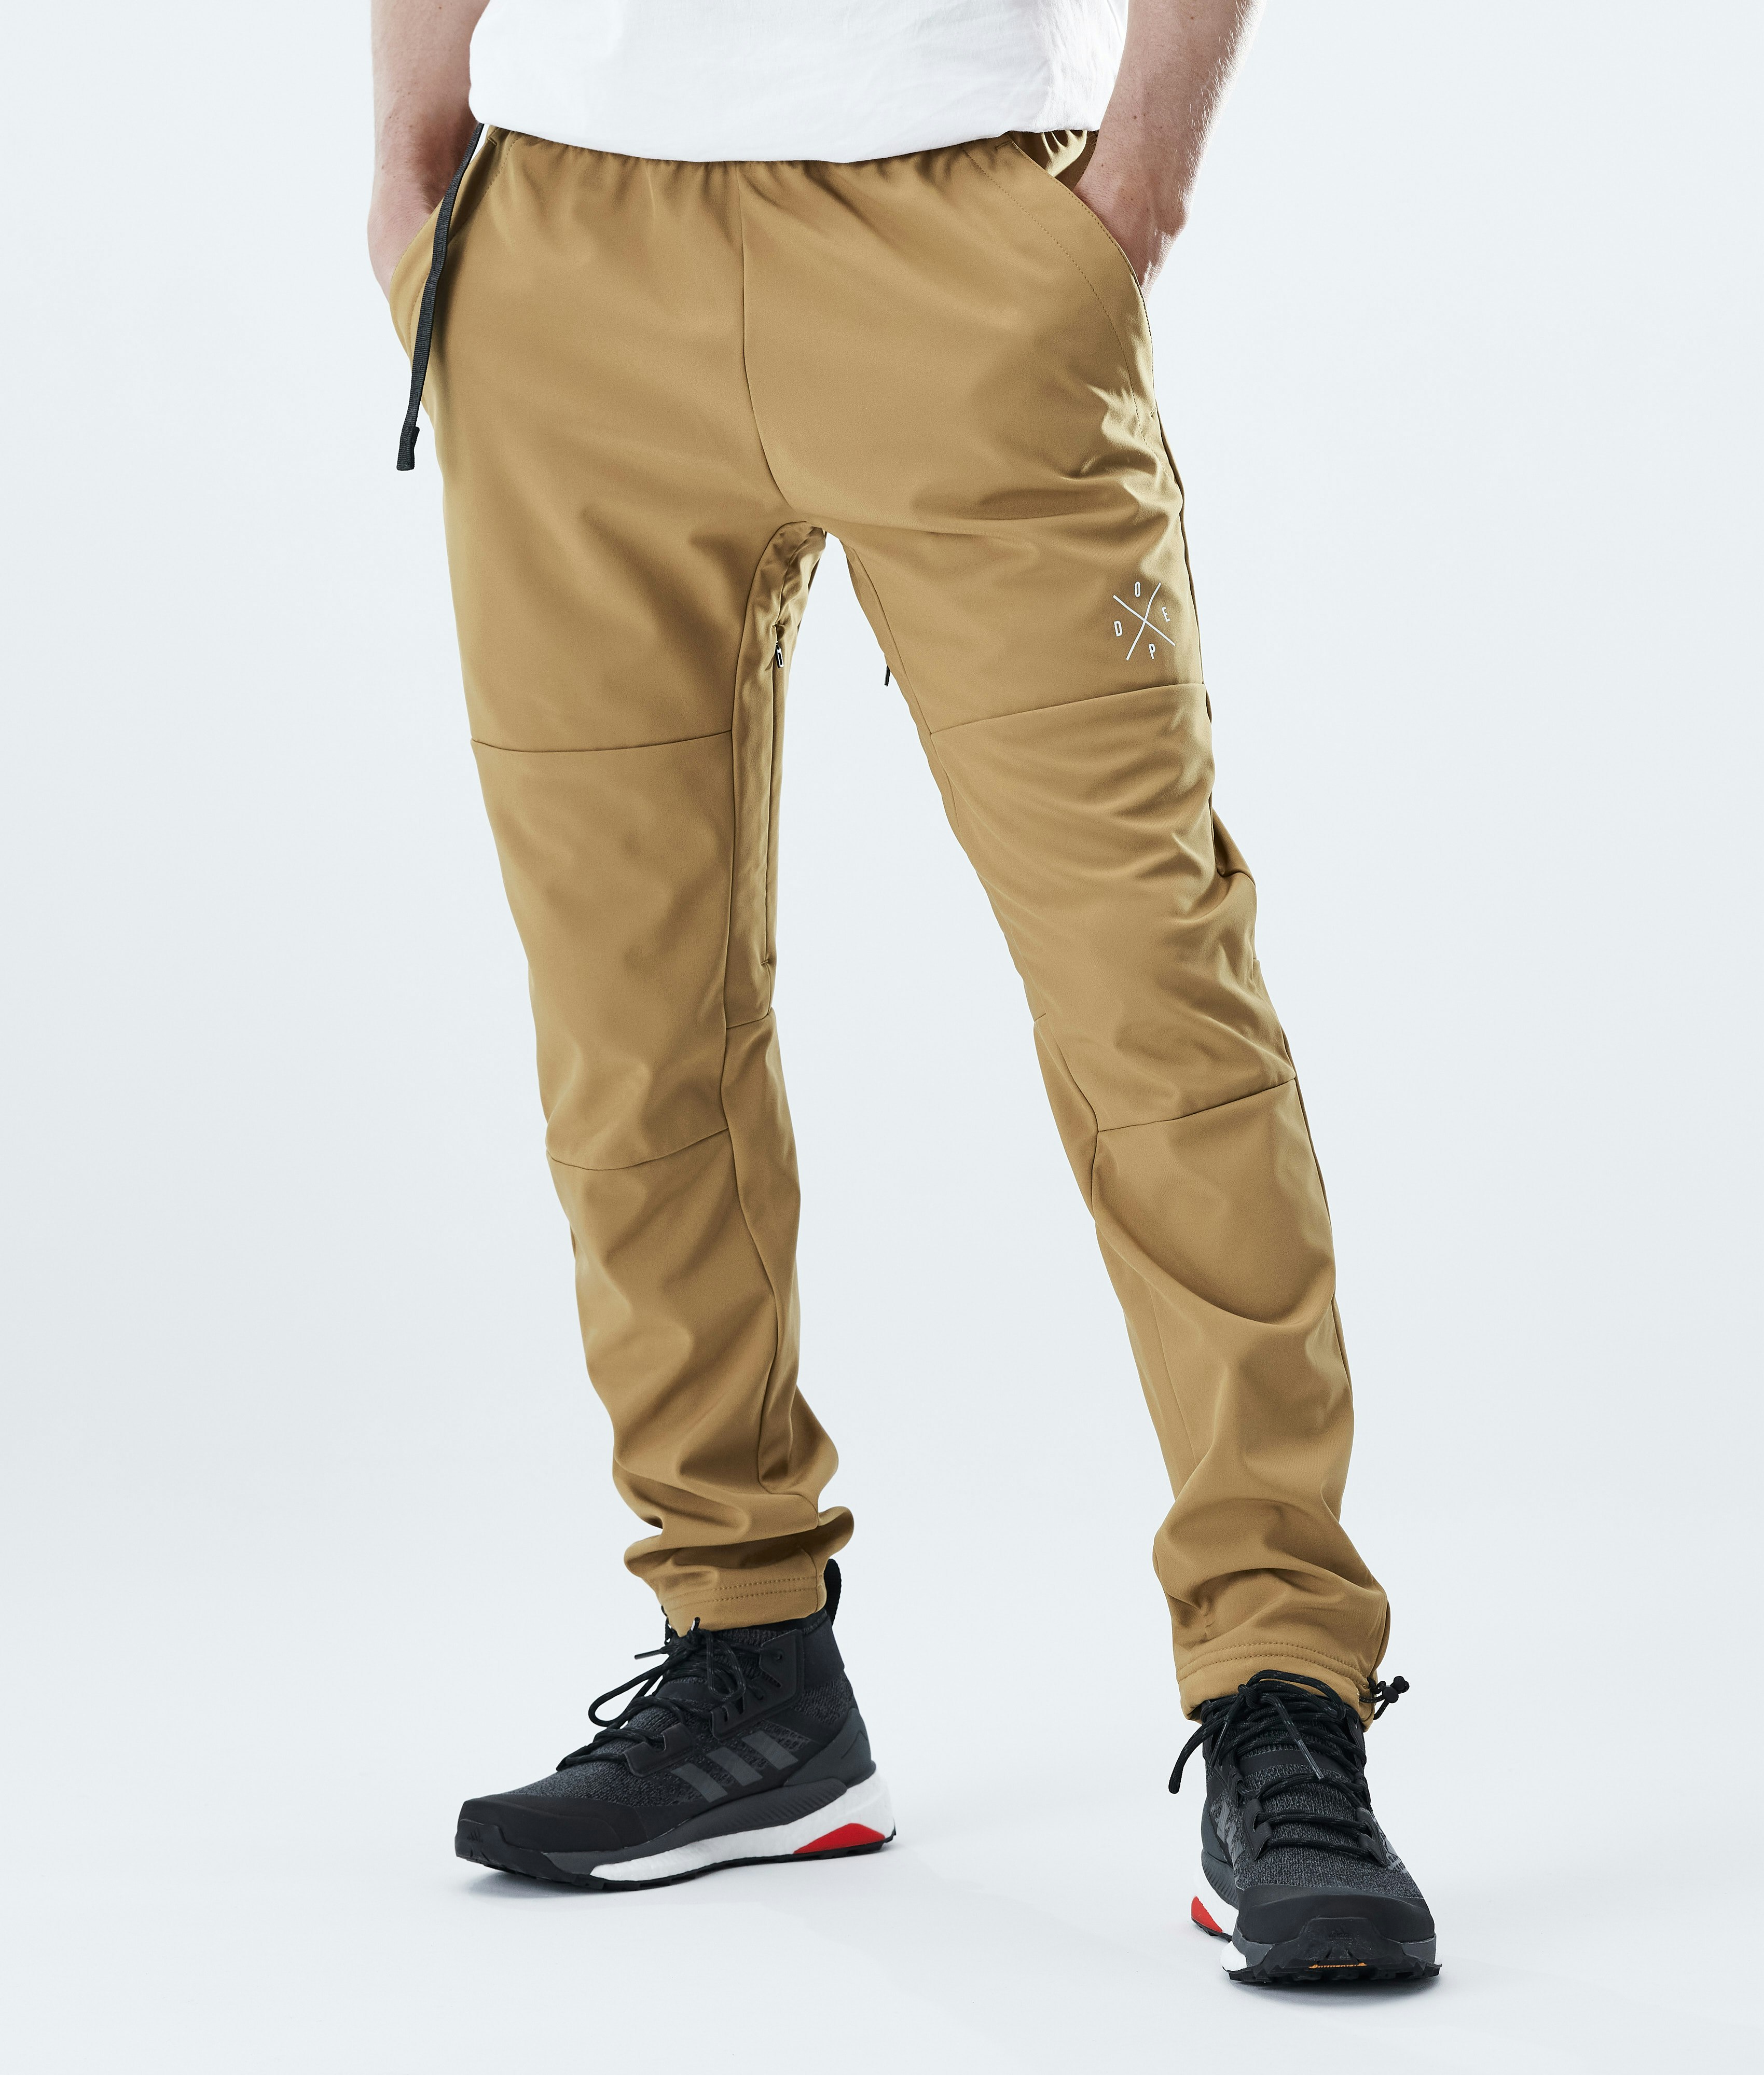 Mens Fashion Casual Printed Linen Pocket Lace Up Pants Large Size Pants  Cargo Pants Men Rose Gold Xxxl - Walmart.com